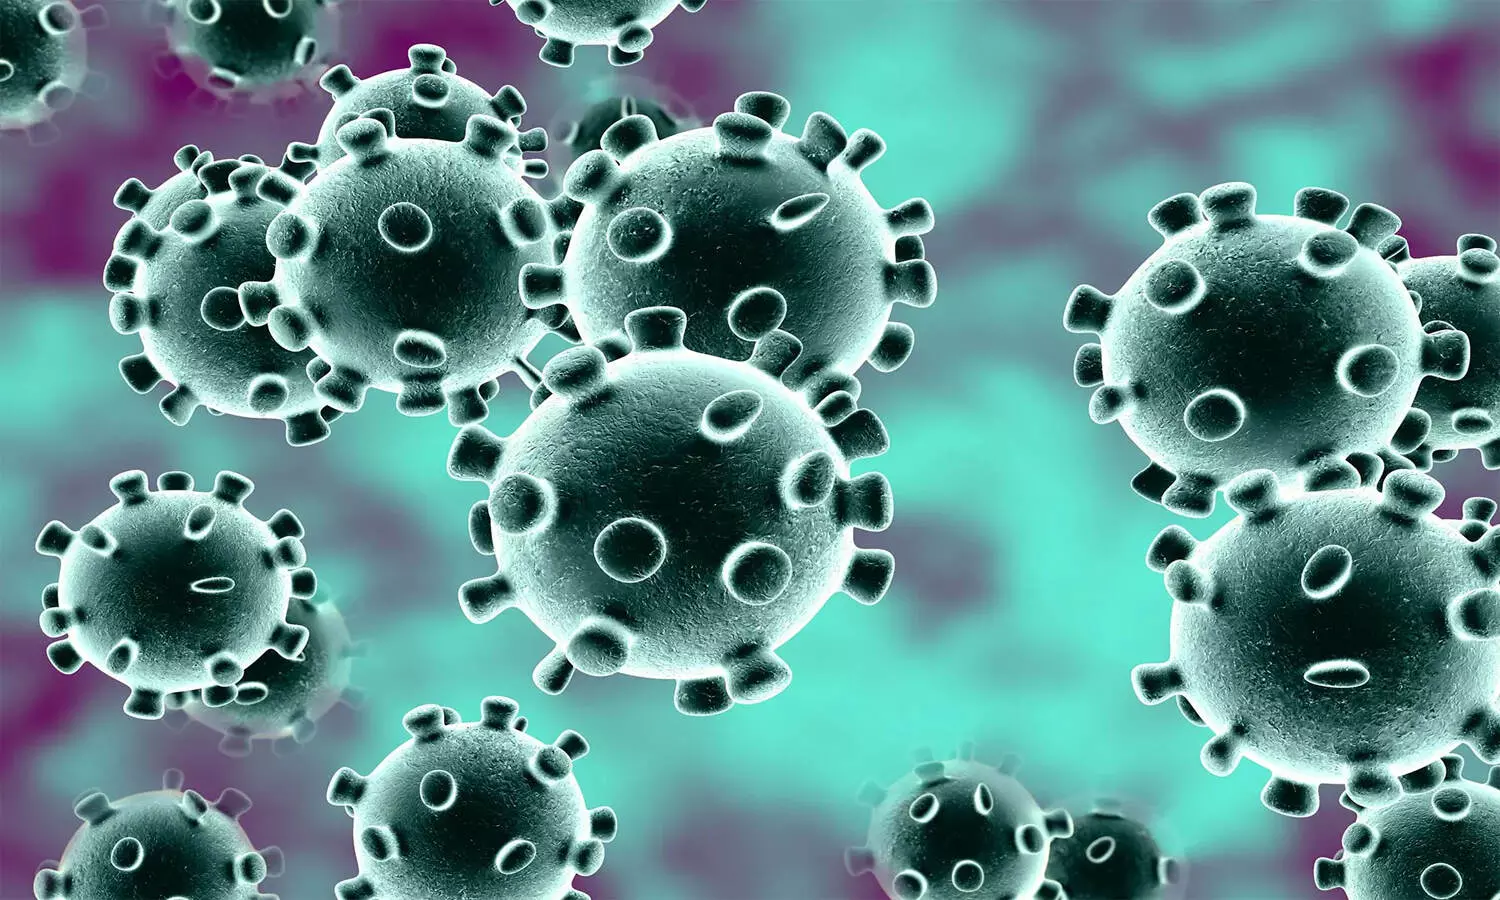 Coronavirus News: किस देश के नागरिकों को मिलने वाली है सोशल डिस्टेंसिंग और मास्क पहनने से छूट, पढे़ं पूरी खबर